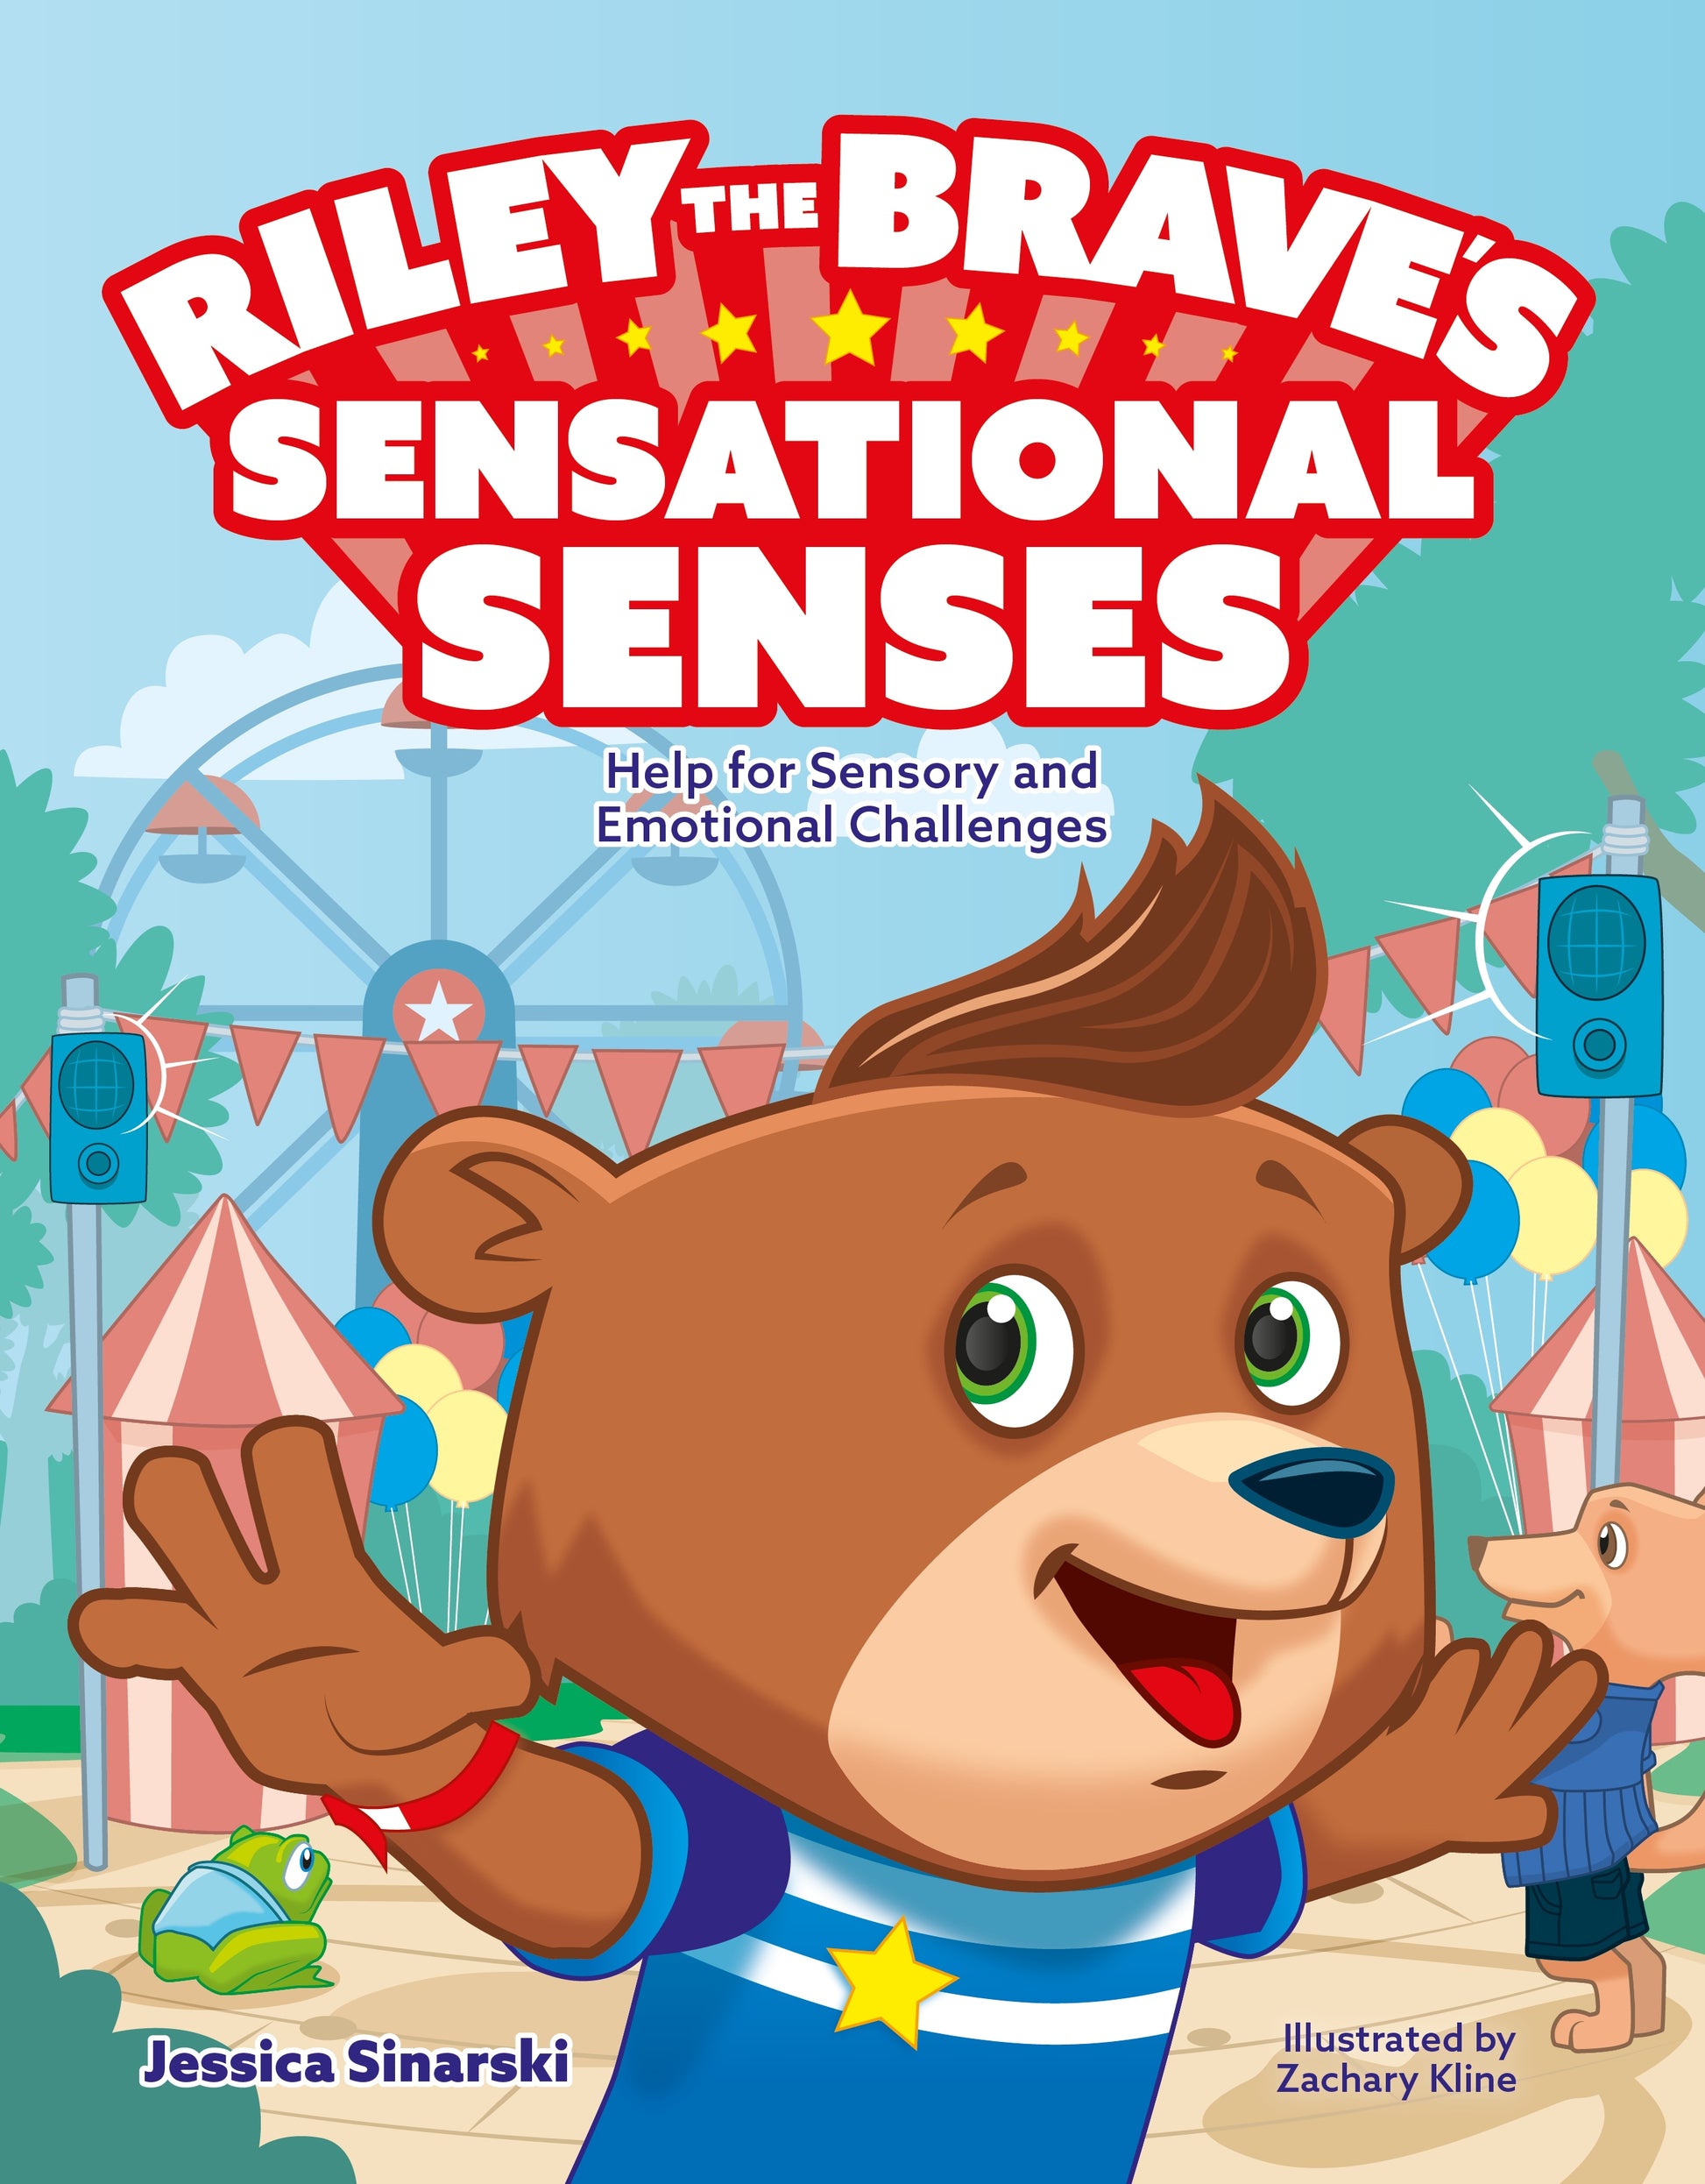 Riley the Brave's Sensational Senses by Zachary Kline, Jessica Sinarski